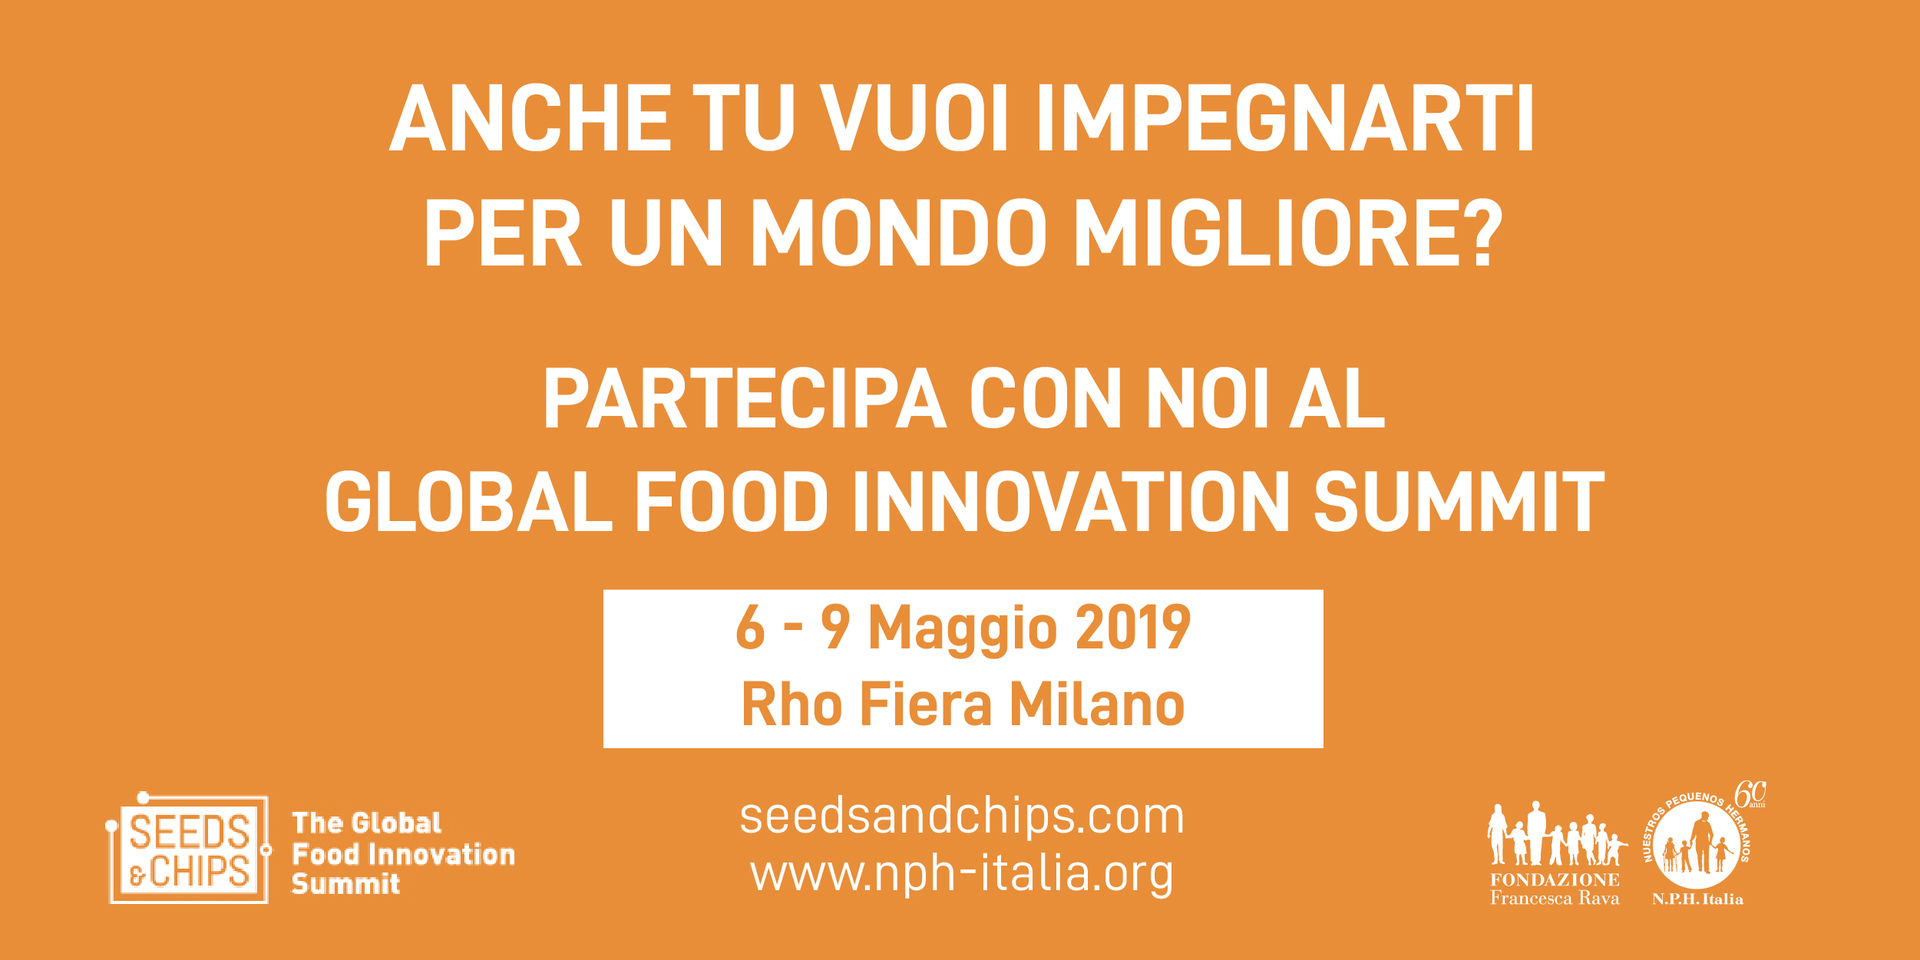 Fondazione Francesca Rava e Seeds&Chips lanciano la Call for Teenovators! In palio la possibilità di confrontarsi con innovatori e leader mondiali sul futuro del Pianeta.